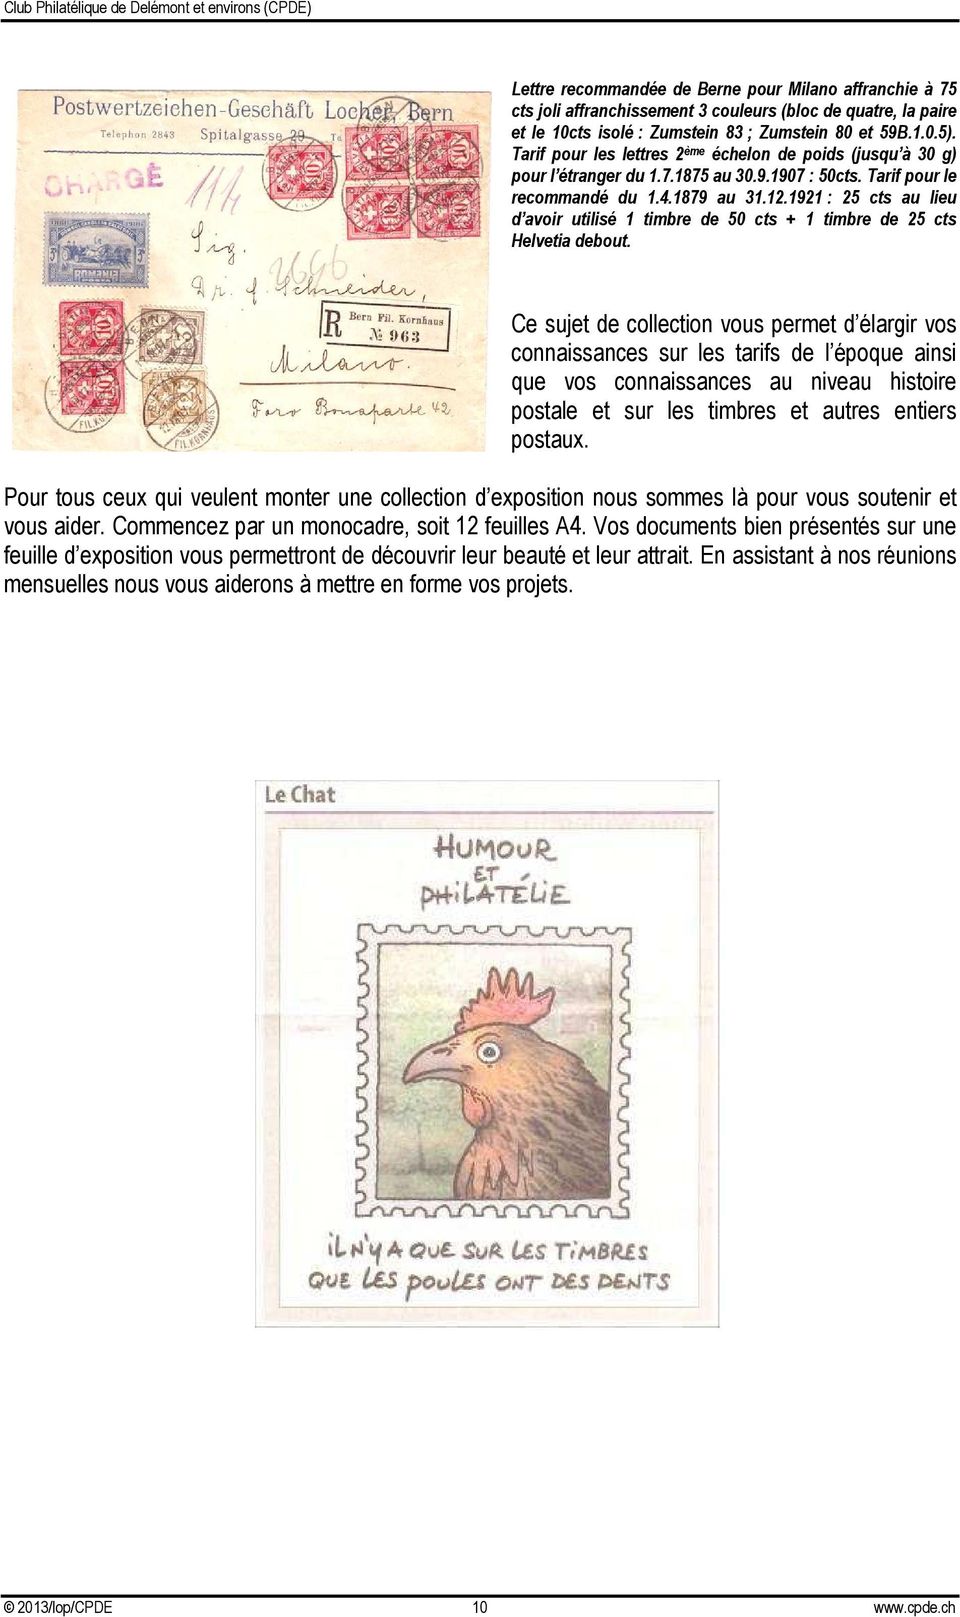 1921 : 25 cts au lieu d avoir utilisé 1 timbre de 50 cts + 1 timbre de 25 cts Helvetia debout.